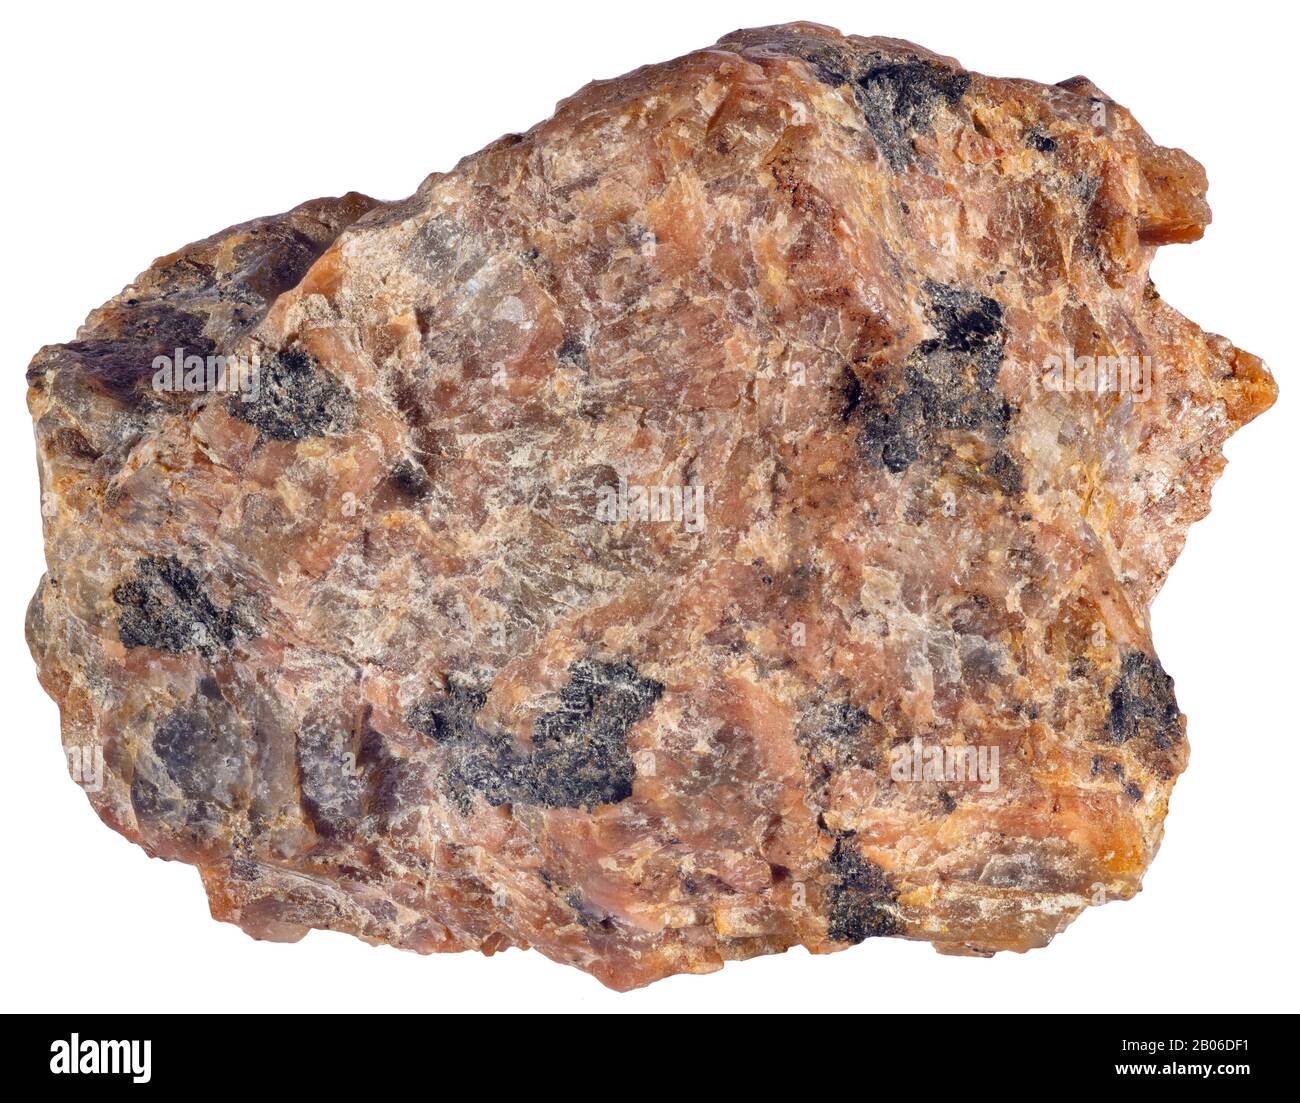 Lamprophyre, Magmatique, Grenville (Québec) La Lamprophyre est une roche ignée porphyritique composée d'une masse de masse de feldspathique à grain fin avec phénocryste Banque D'Images